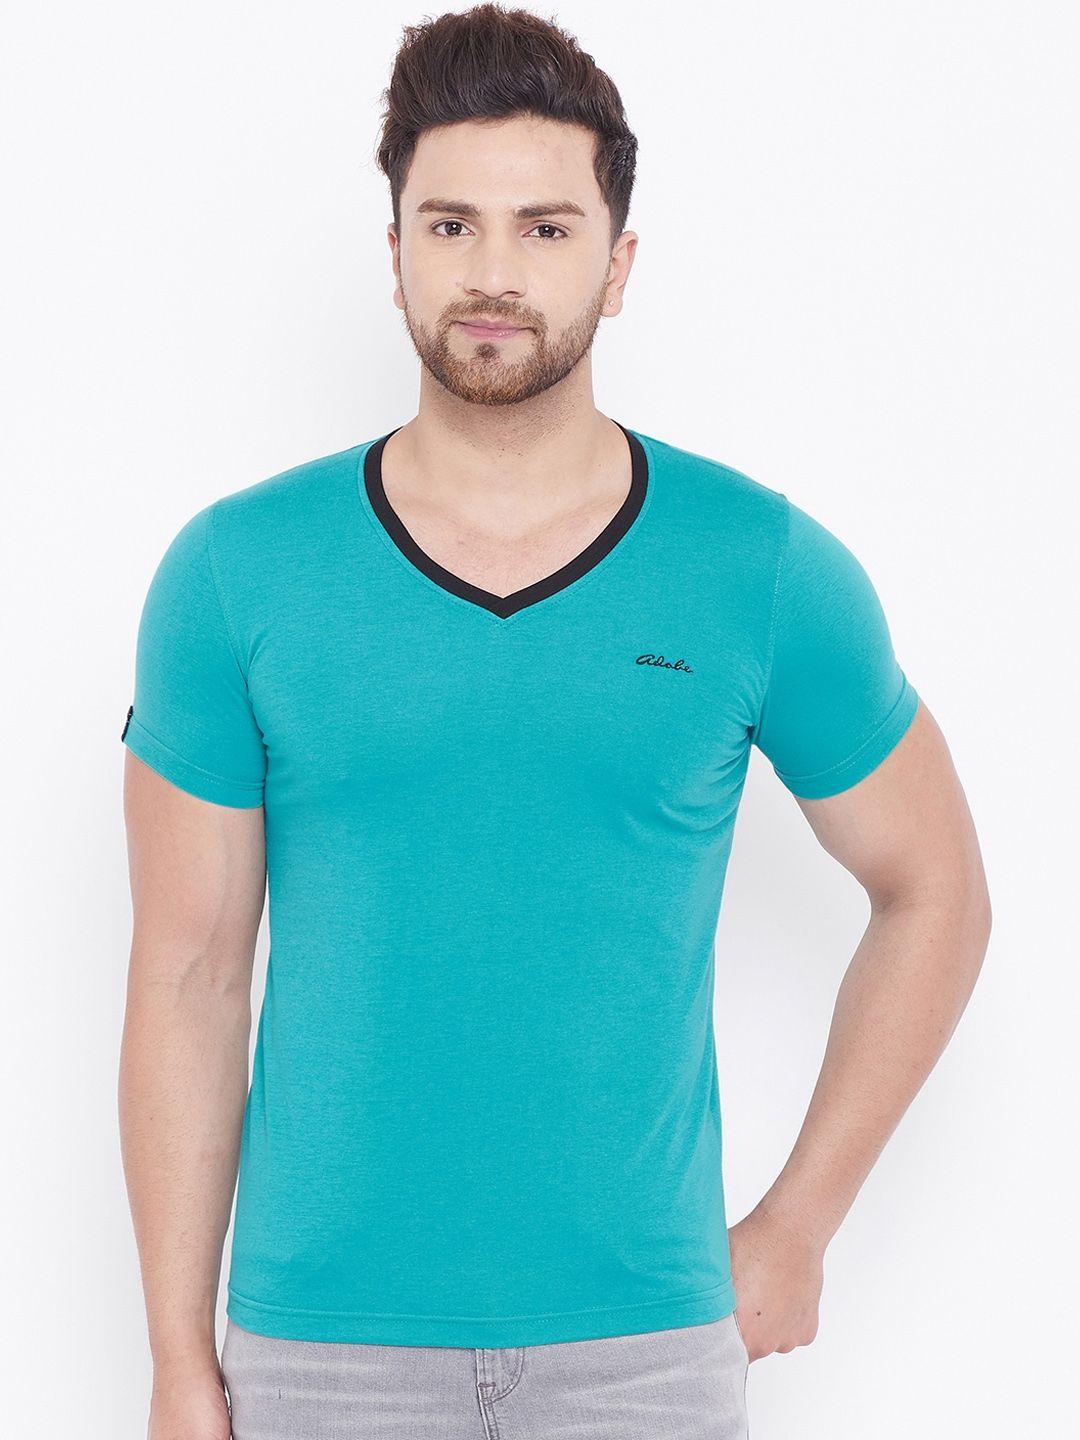 adobe-men-turquoise-blue-solid-v-neck-t-shirt